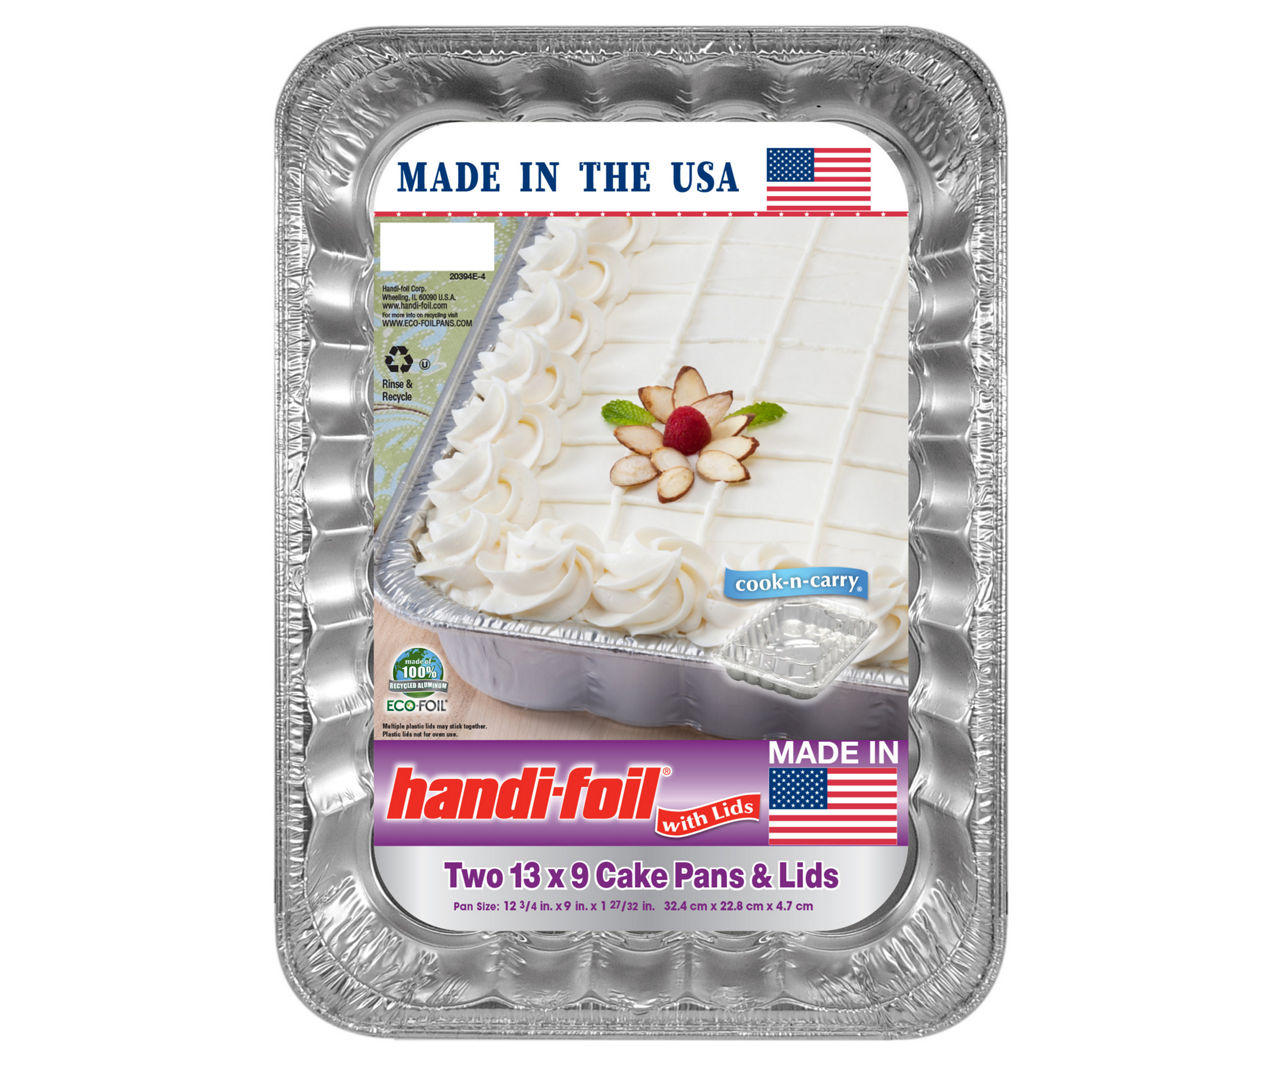 Jiffy Foil Eco-Foil Cook-n-Carry Aluminum 9 x 13 Cake Pans & Lids, 2-Pack